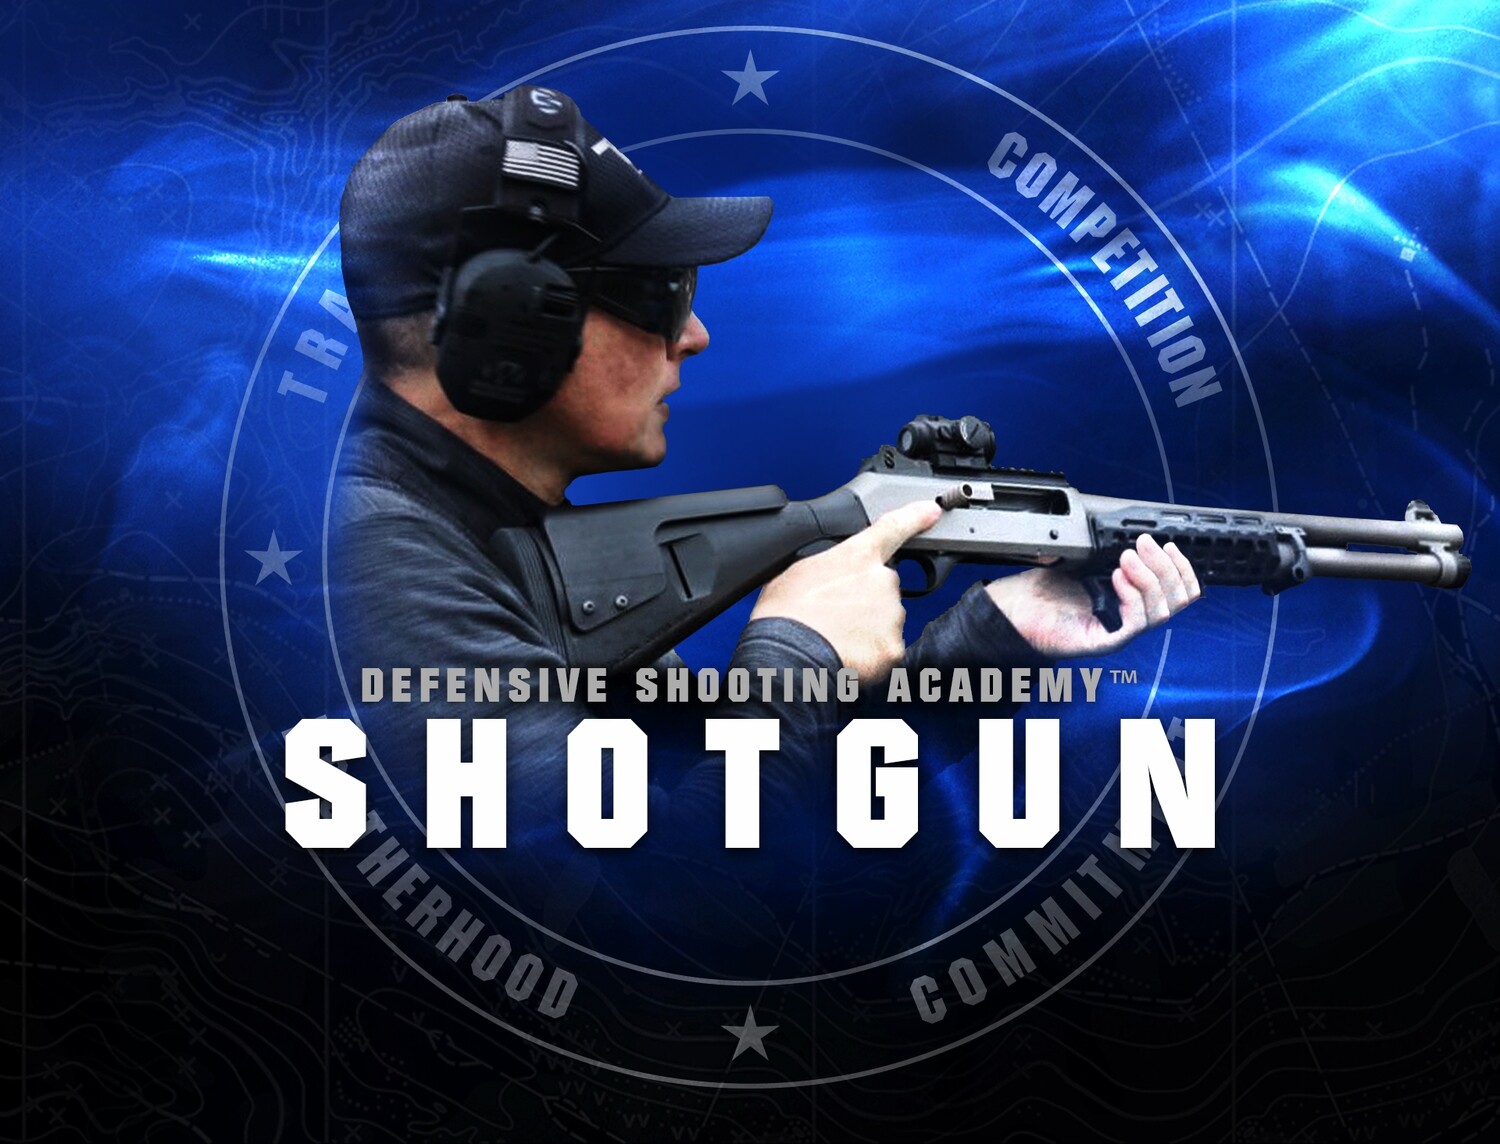 March 26th SEMI-AUTO Shotgun Course - 8 HOURS C.L.E.E.T. ACCREDITATION